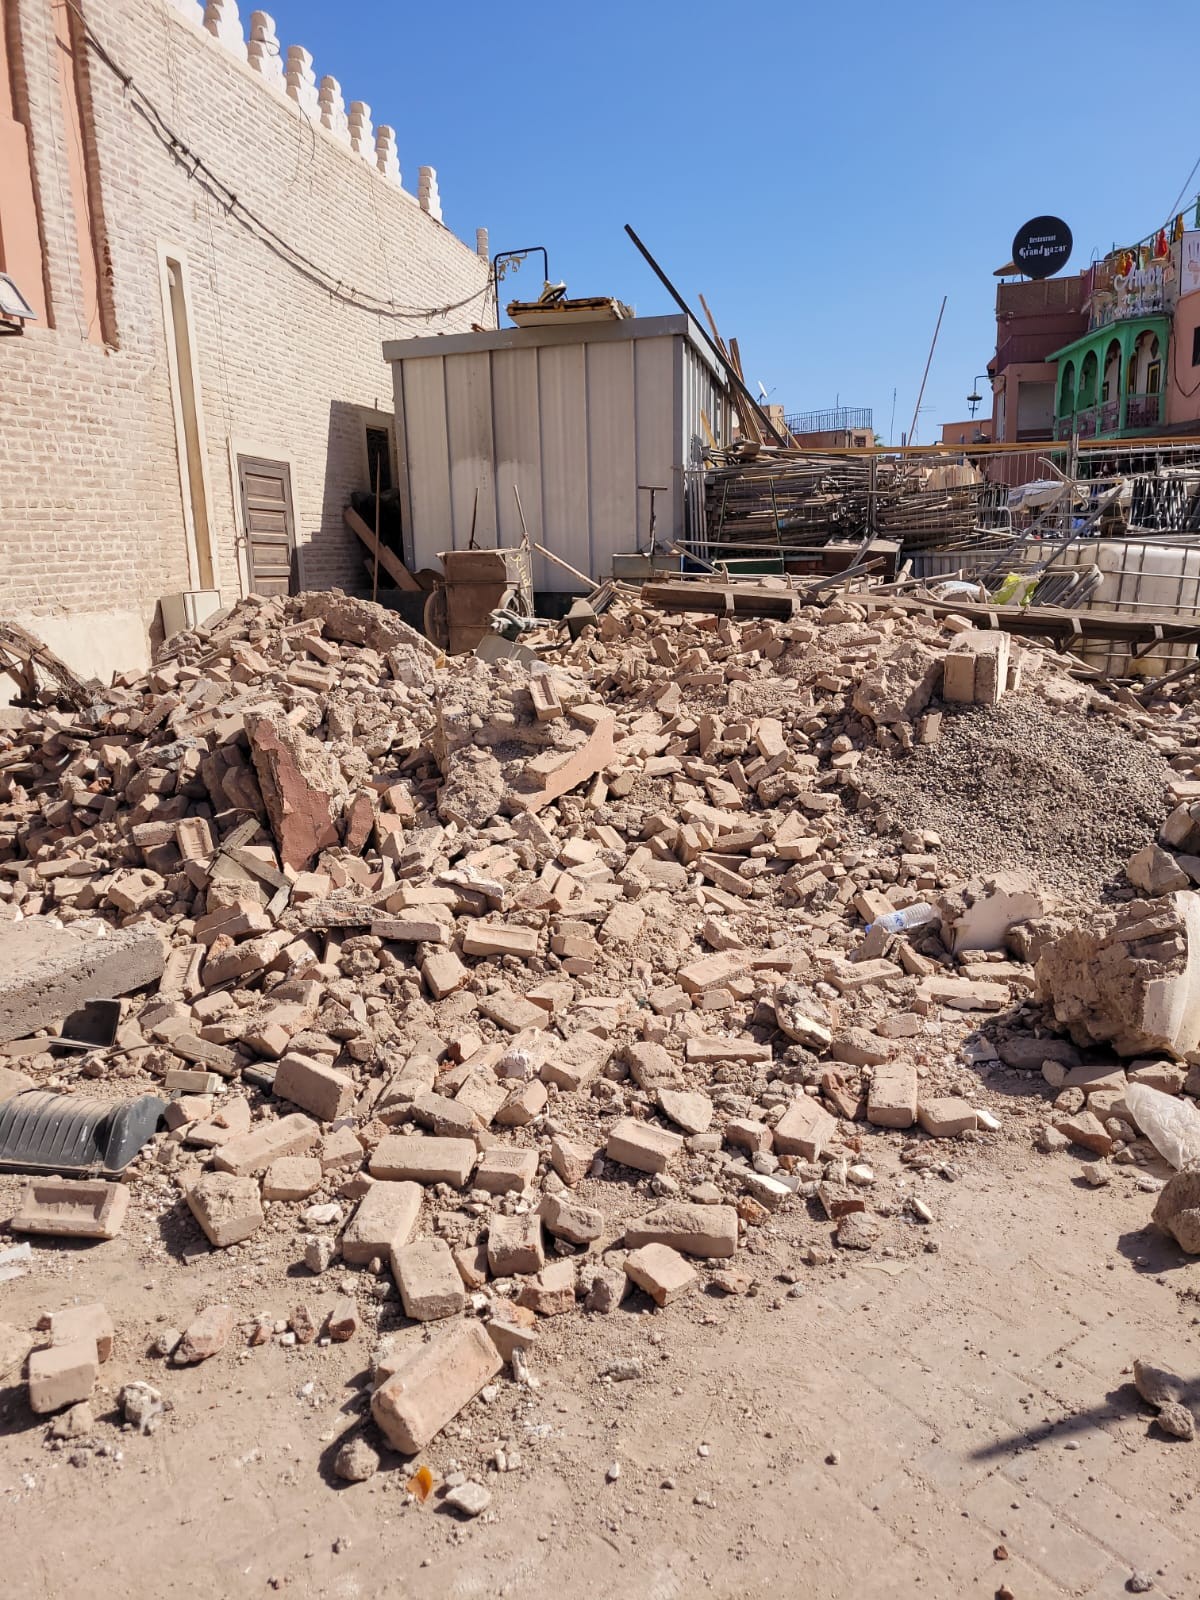 A cidade de Marrakech após o terremoto poderoso sismo de magnitude 6,8 — Foto: Jalvan Andrade/acervo pessoal